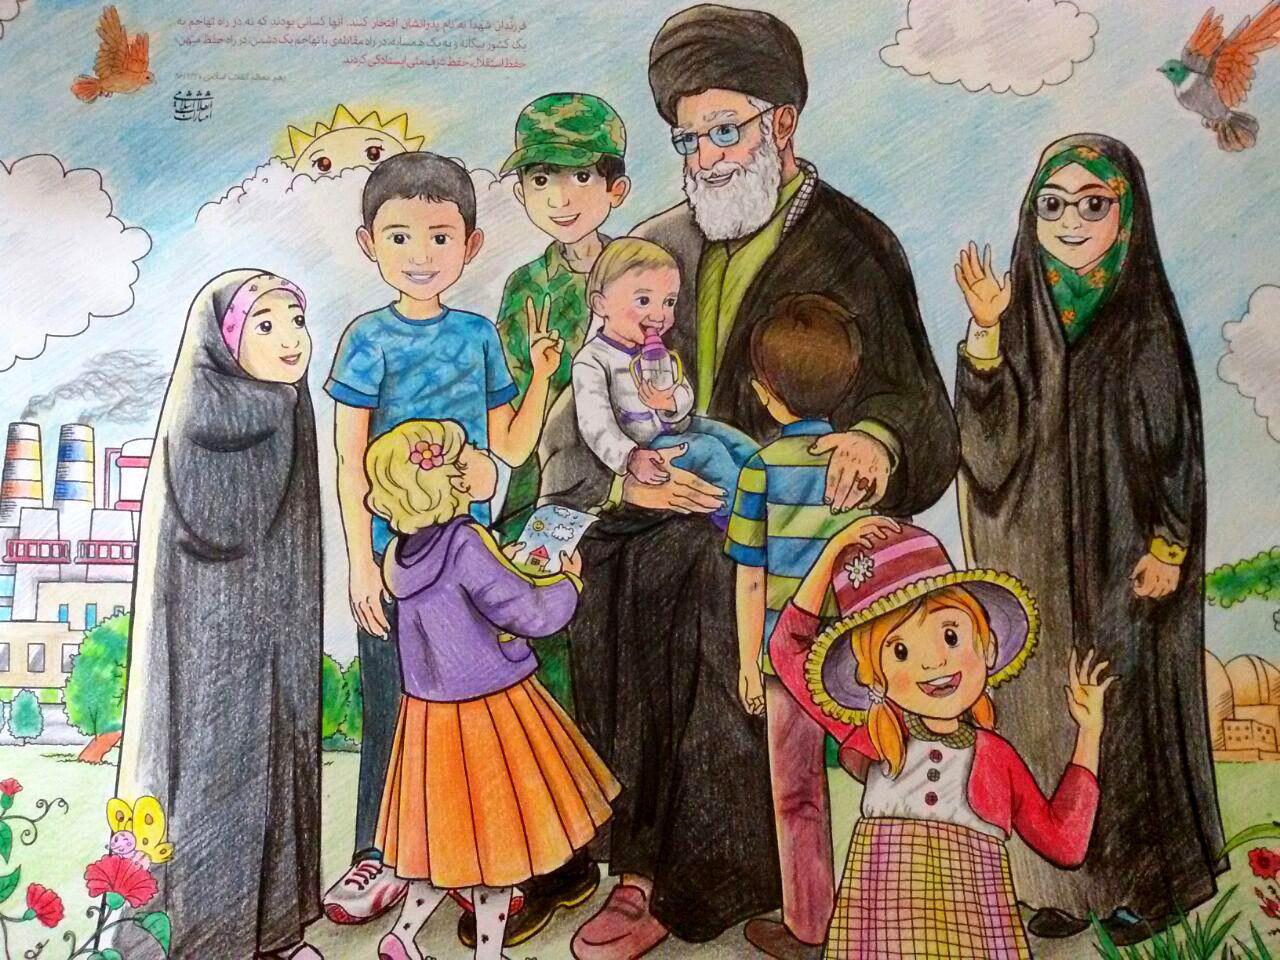 نقاشی در مورد انقلاب اسلامی ایران